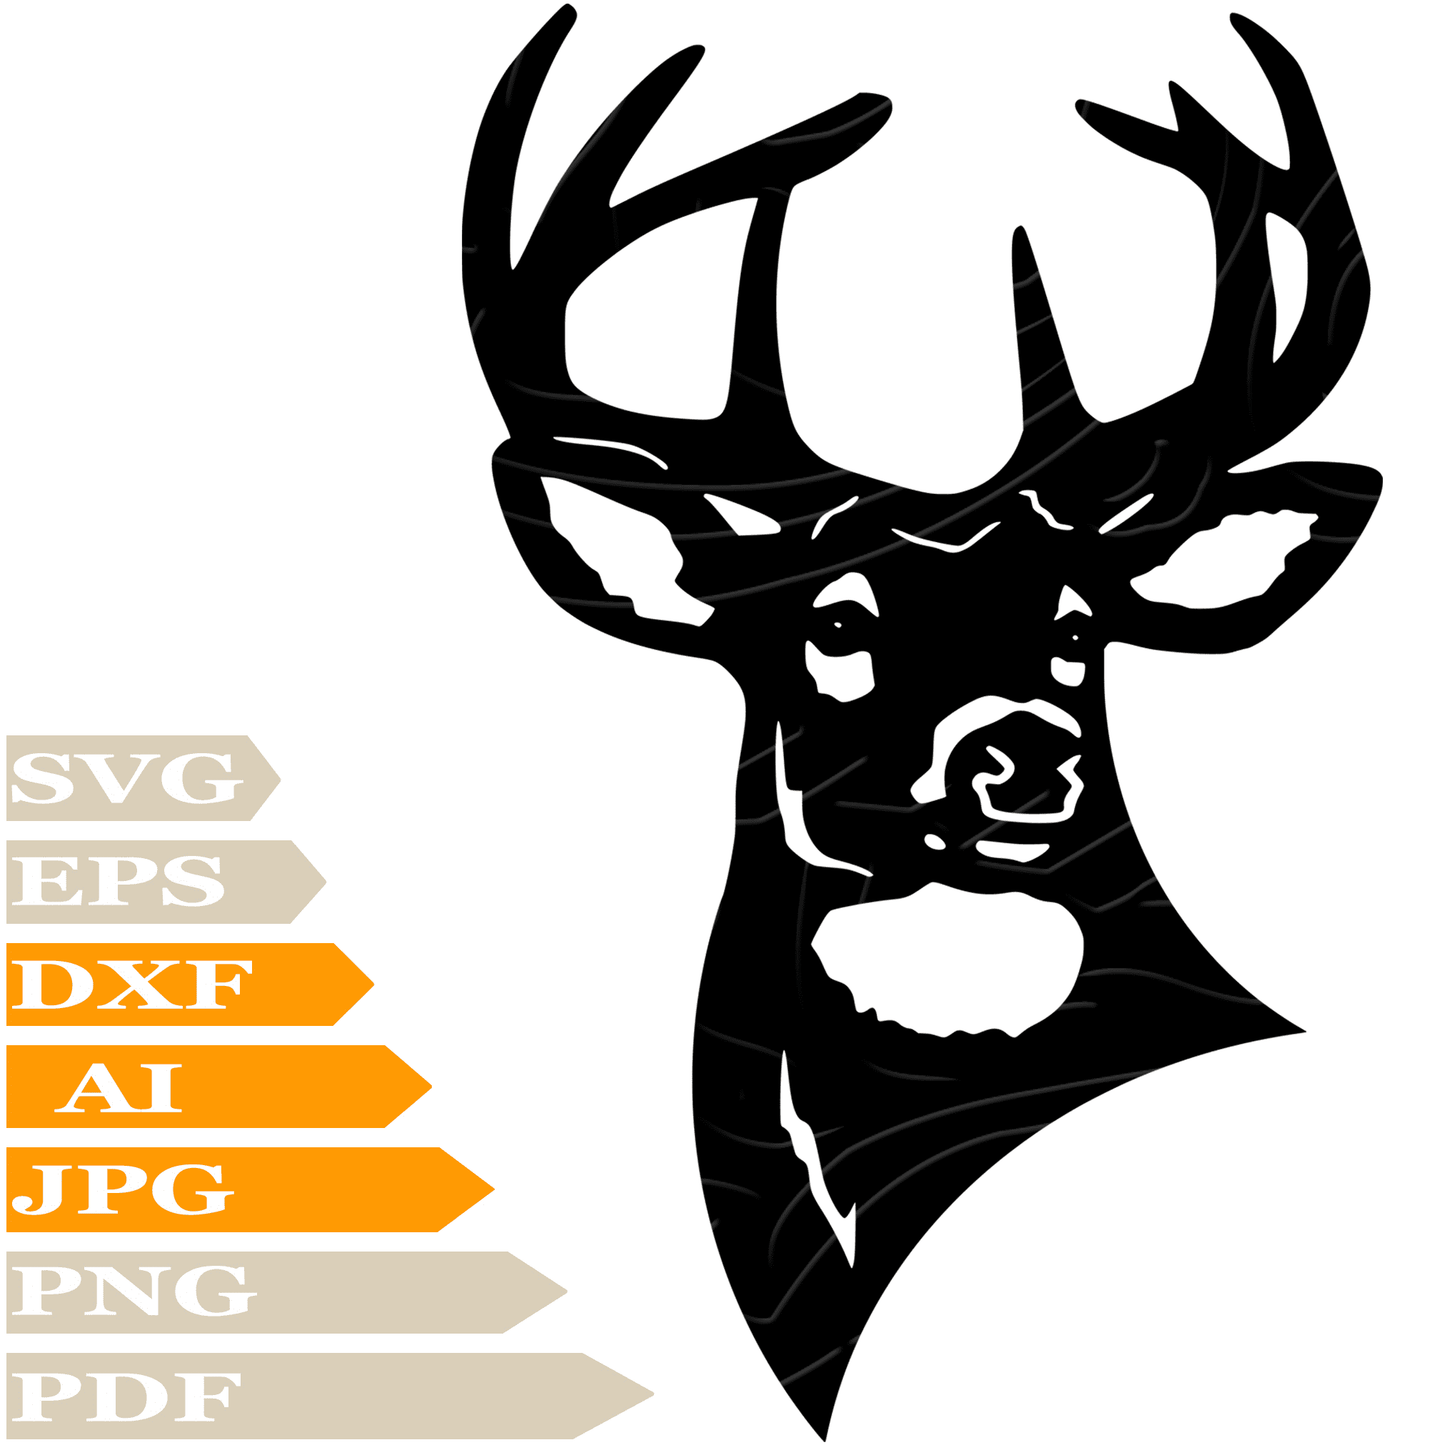 Deer SVG-Deers SVG File-Deer African Deer Drawing SVG-Deer Head Animals Vector Clip art-Image Cut Files-Illustration-PNG-For Cricut -Instant download-For Shirts-Silhouette